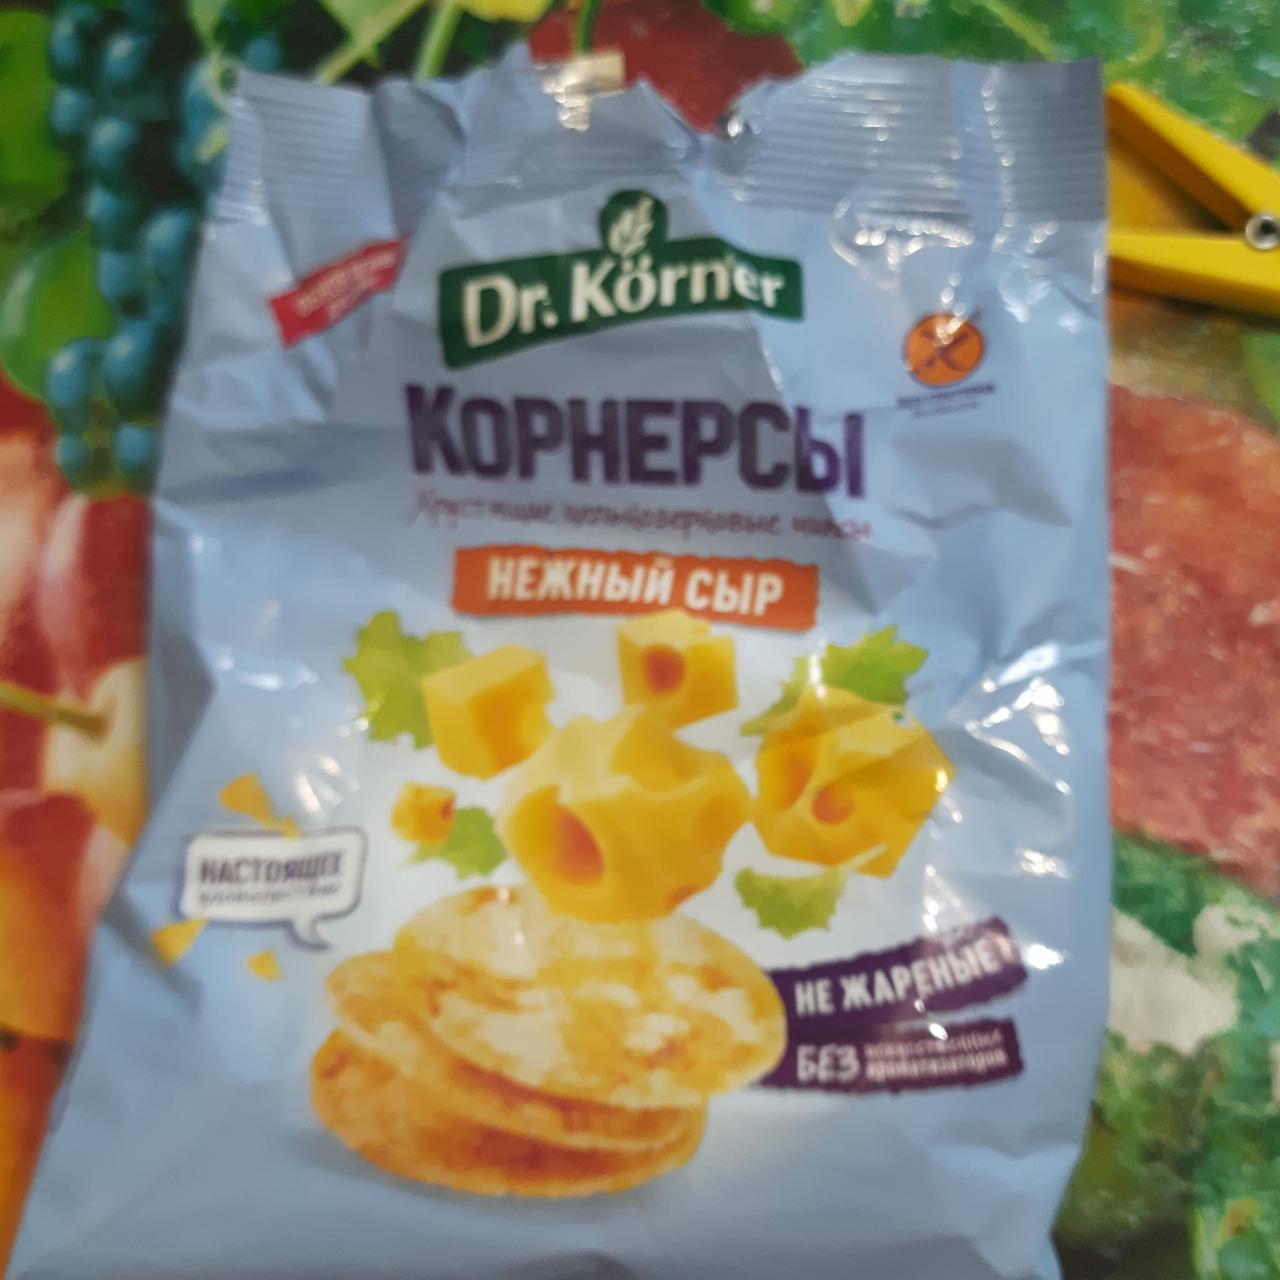 Фото - хрустящие цельноезрновые чипсы Корнерсы нежный сыр Dr.Korner